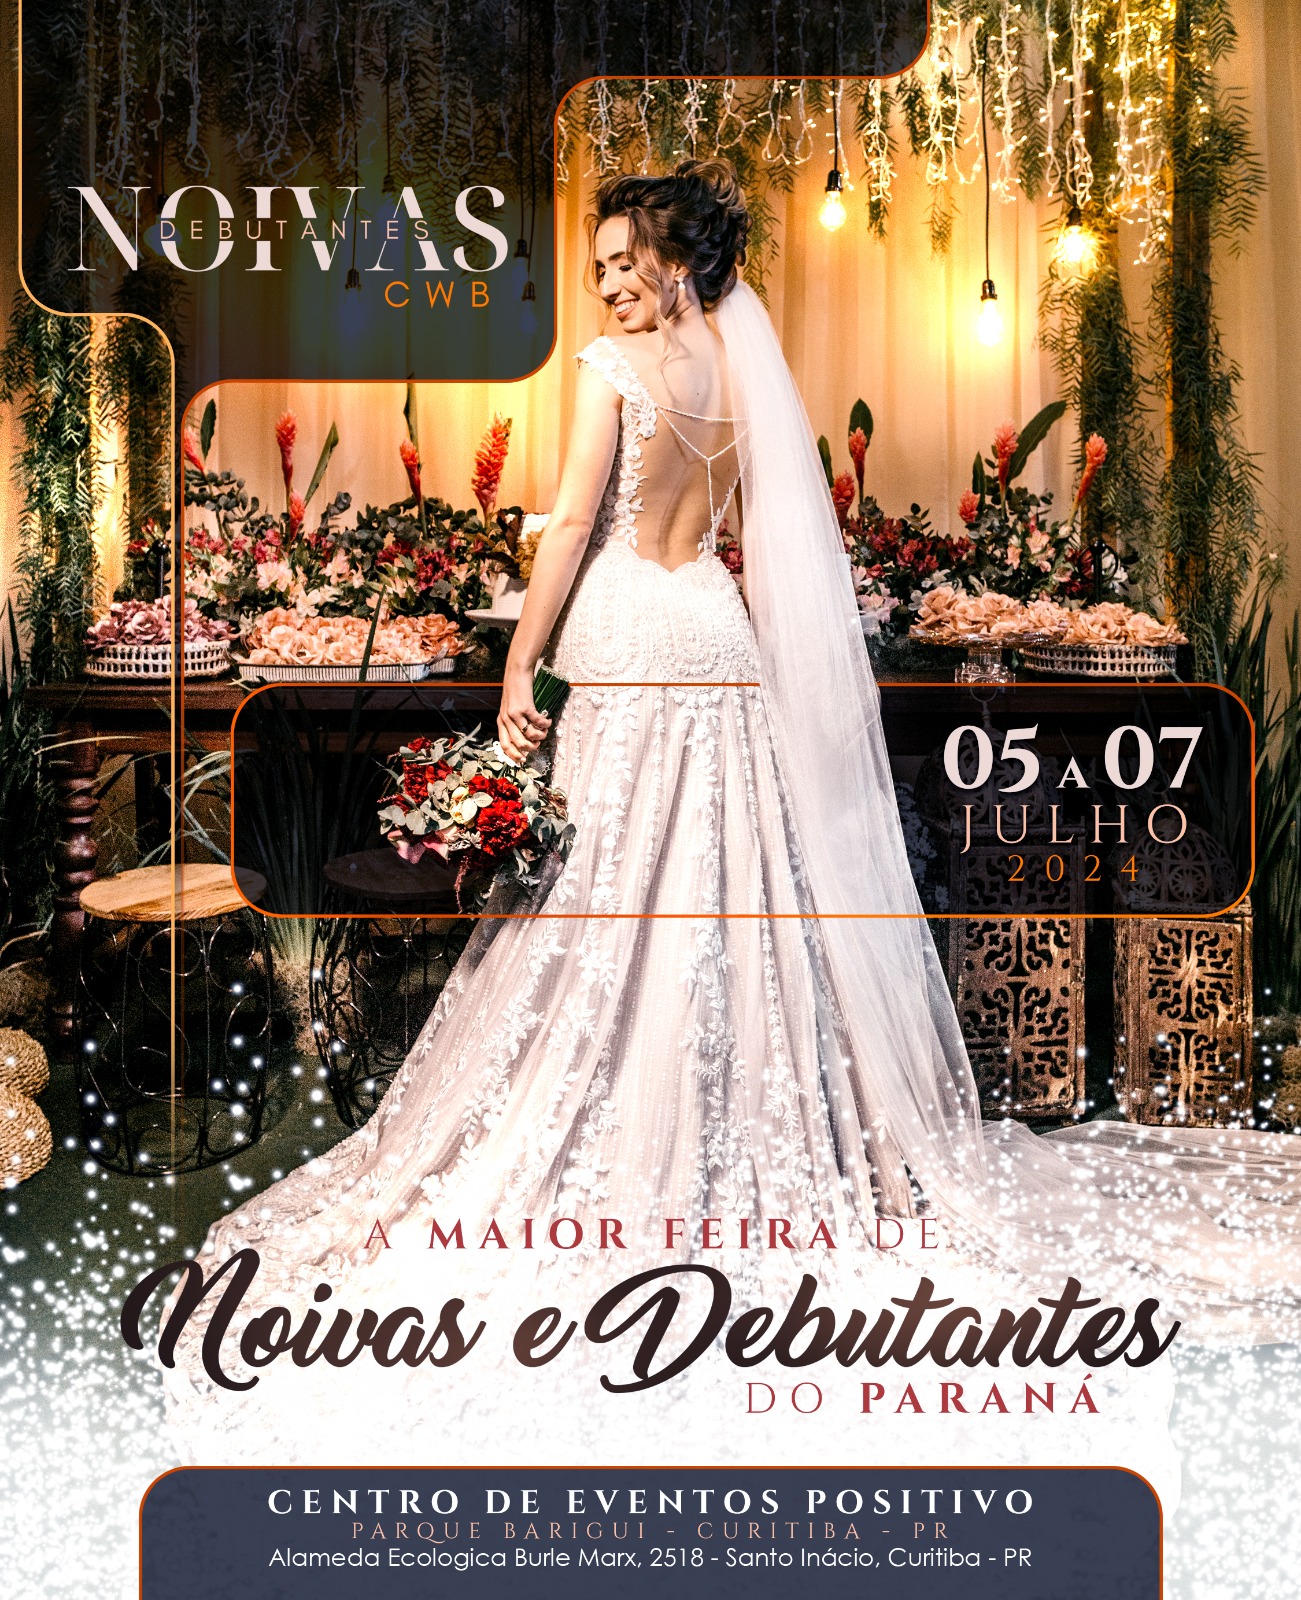 Eventos noivas e debutantes em curitiba, datas 5a da 7 de julho